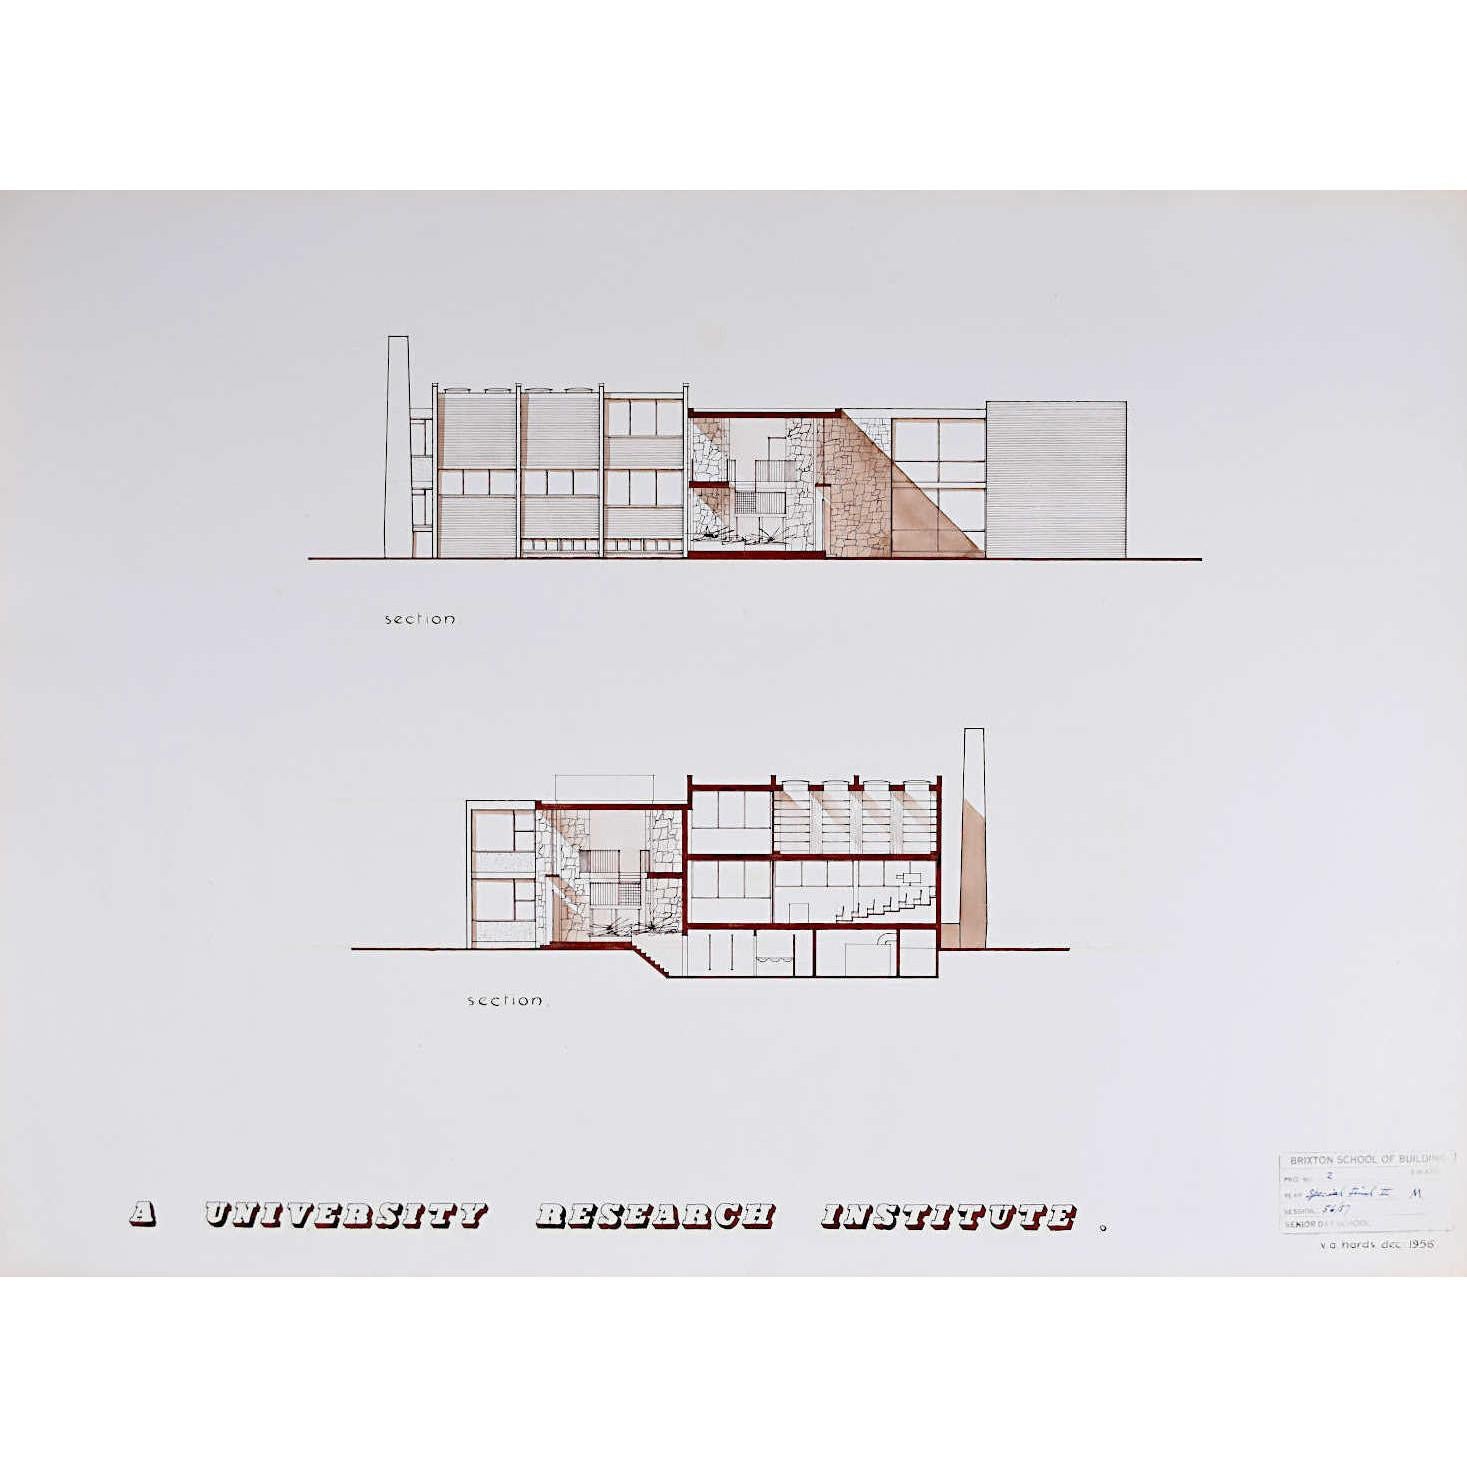 V A Hards Landscape Art - Design for Modernist Brutalist Institute III mid-century architectural drawing